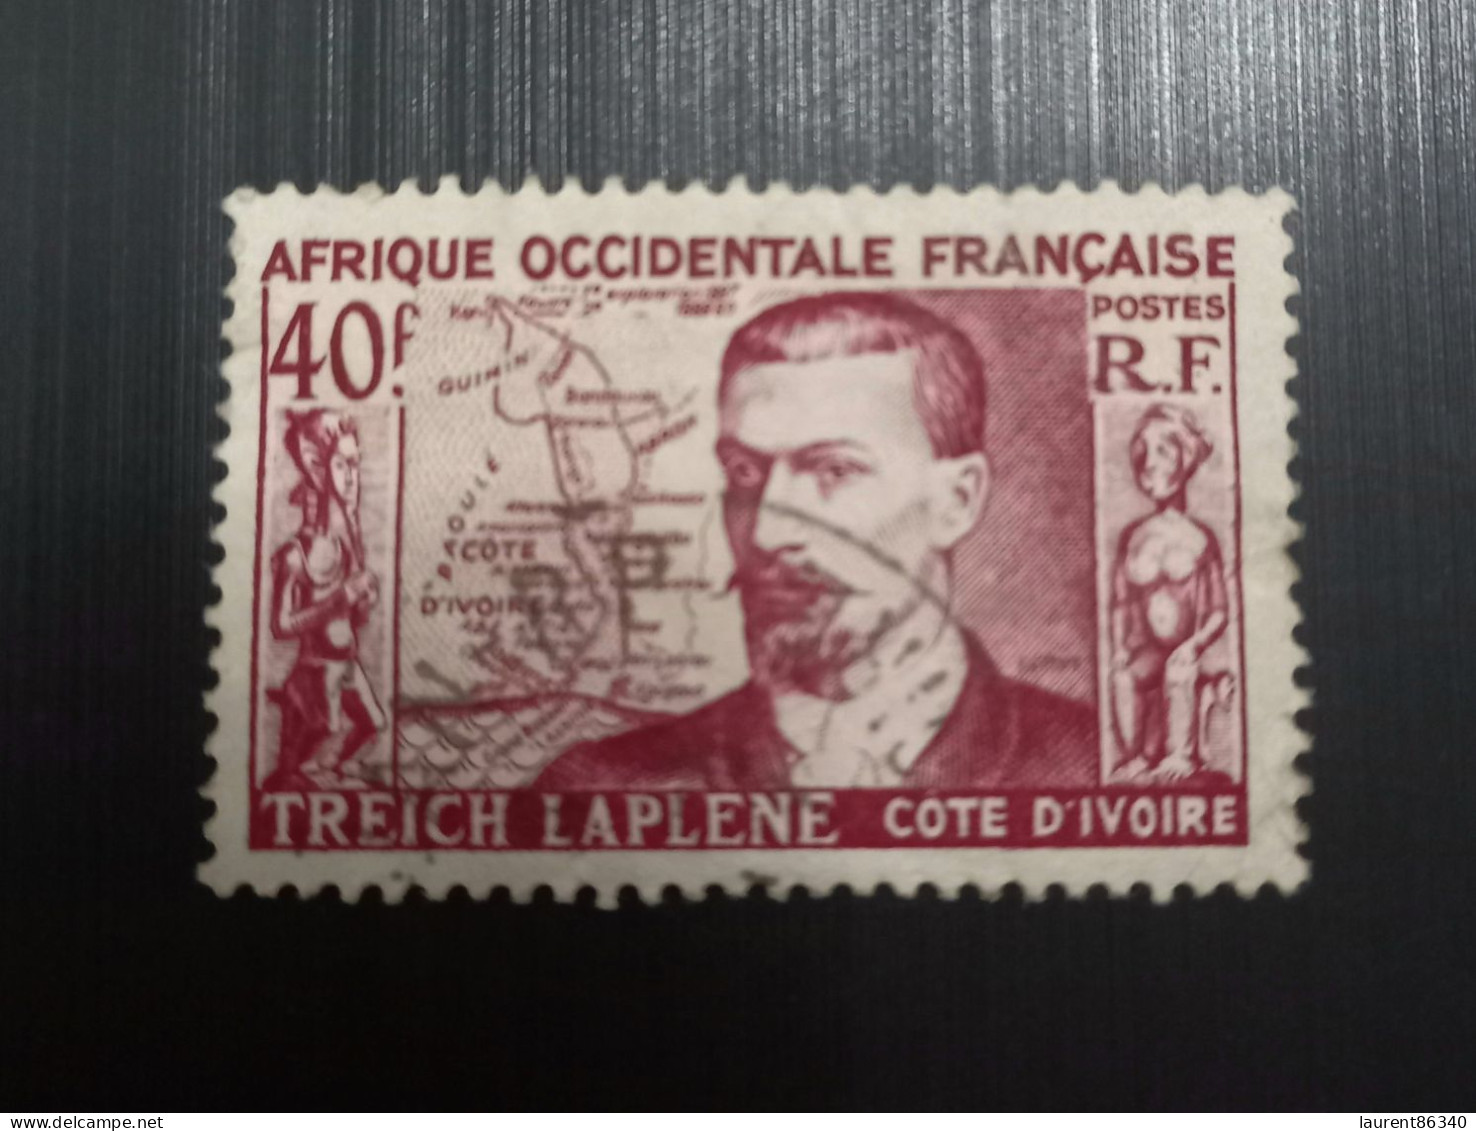 Afrique Occidentale Française 1952 Marcel Treich-Laplène (1860-1889), Fondateur De La Côte D'Ivoire - Gebruikt